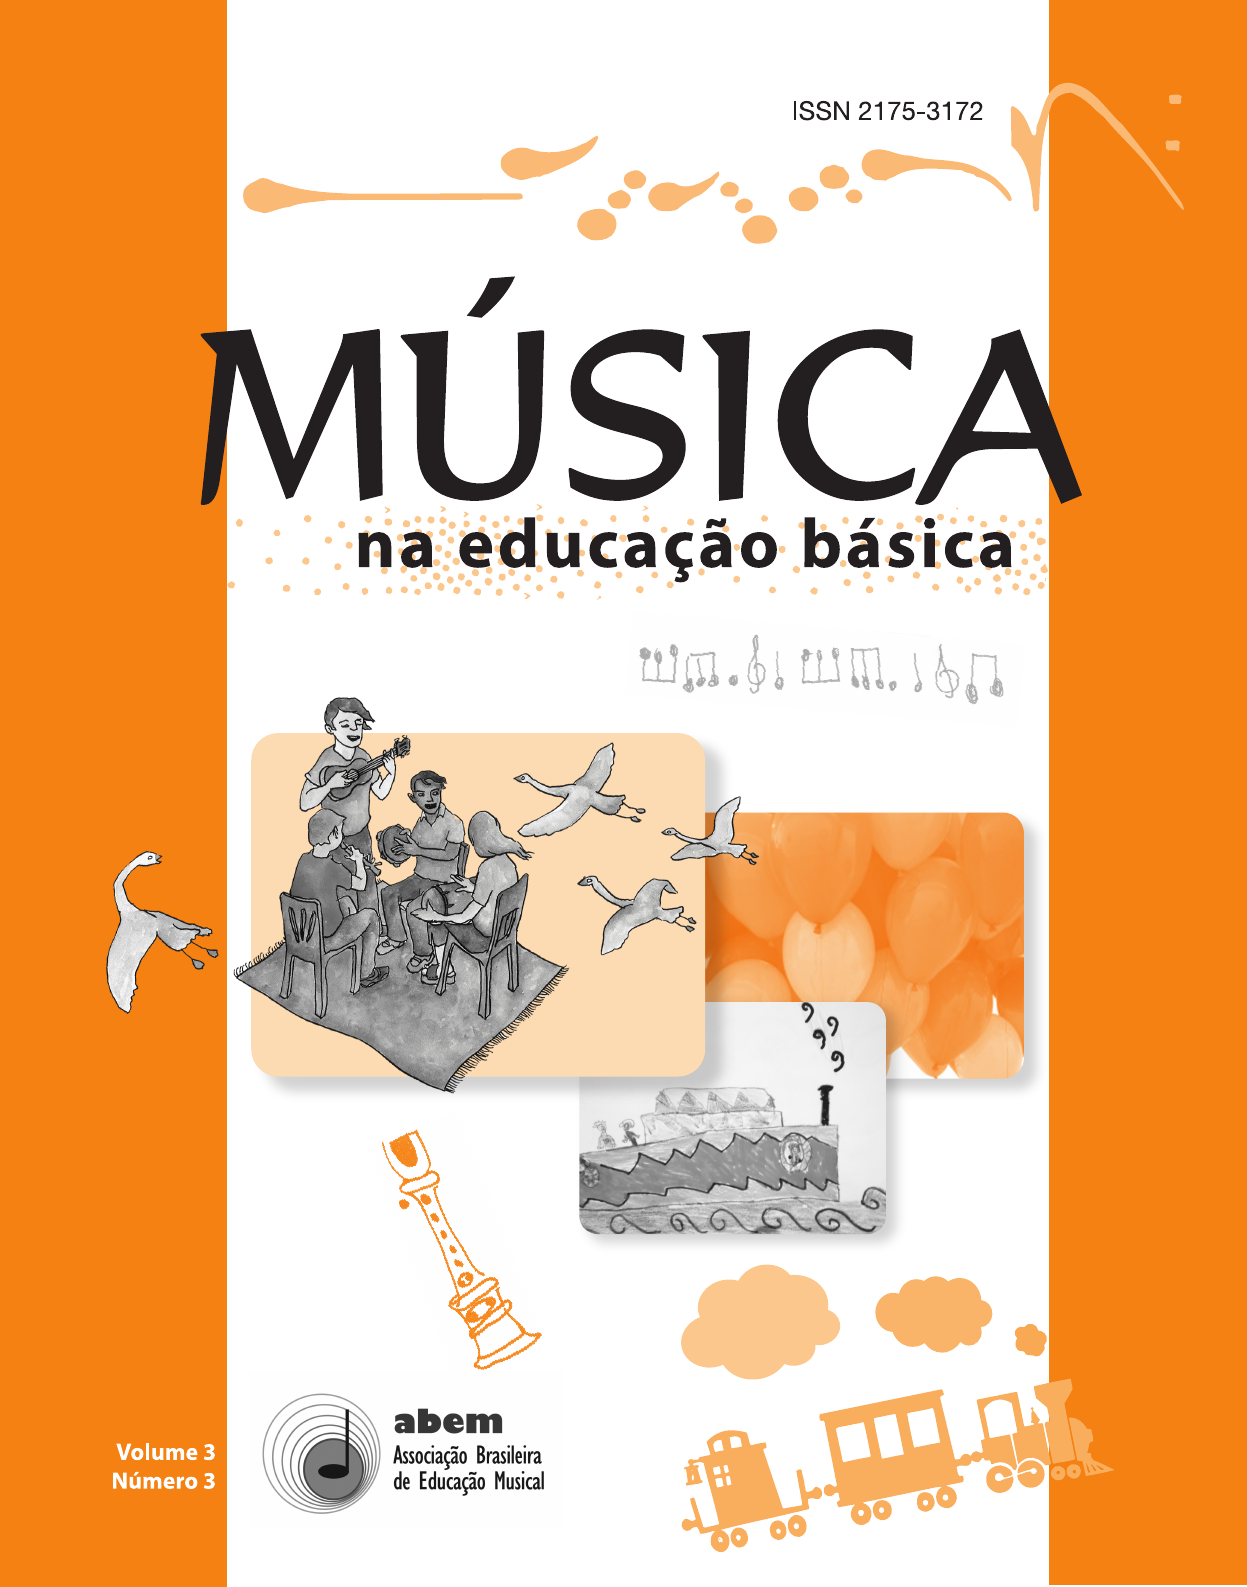 Dicionário de Música – Meloteca